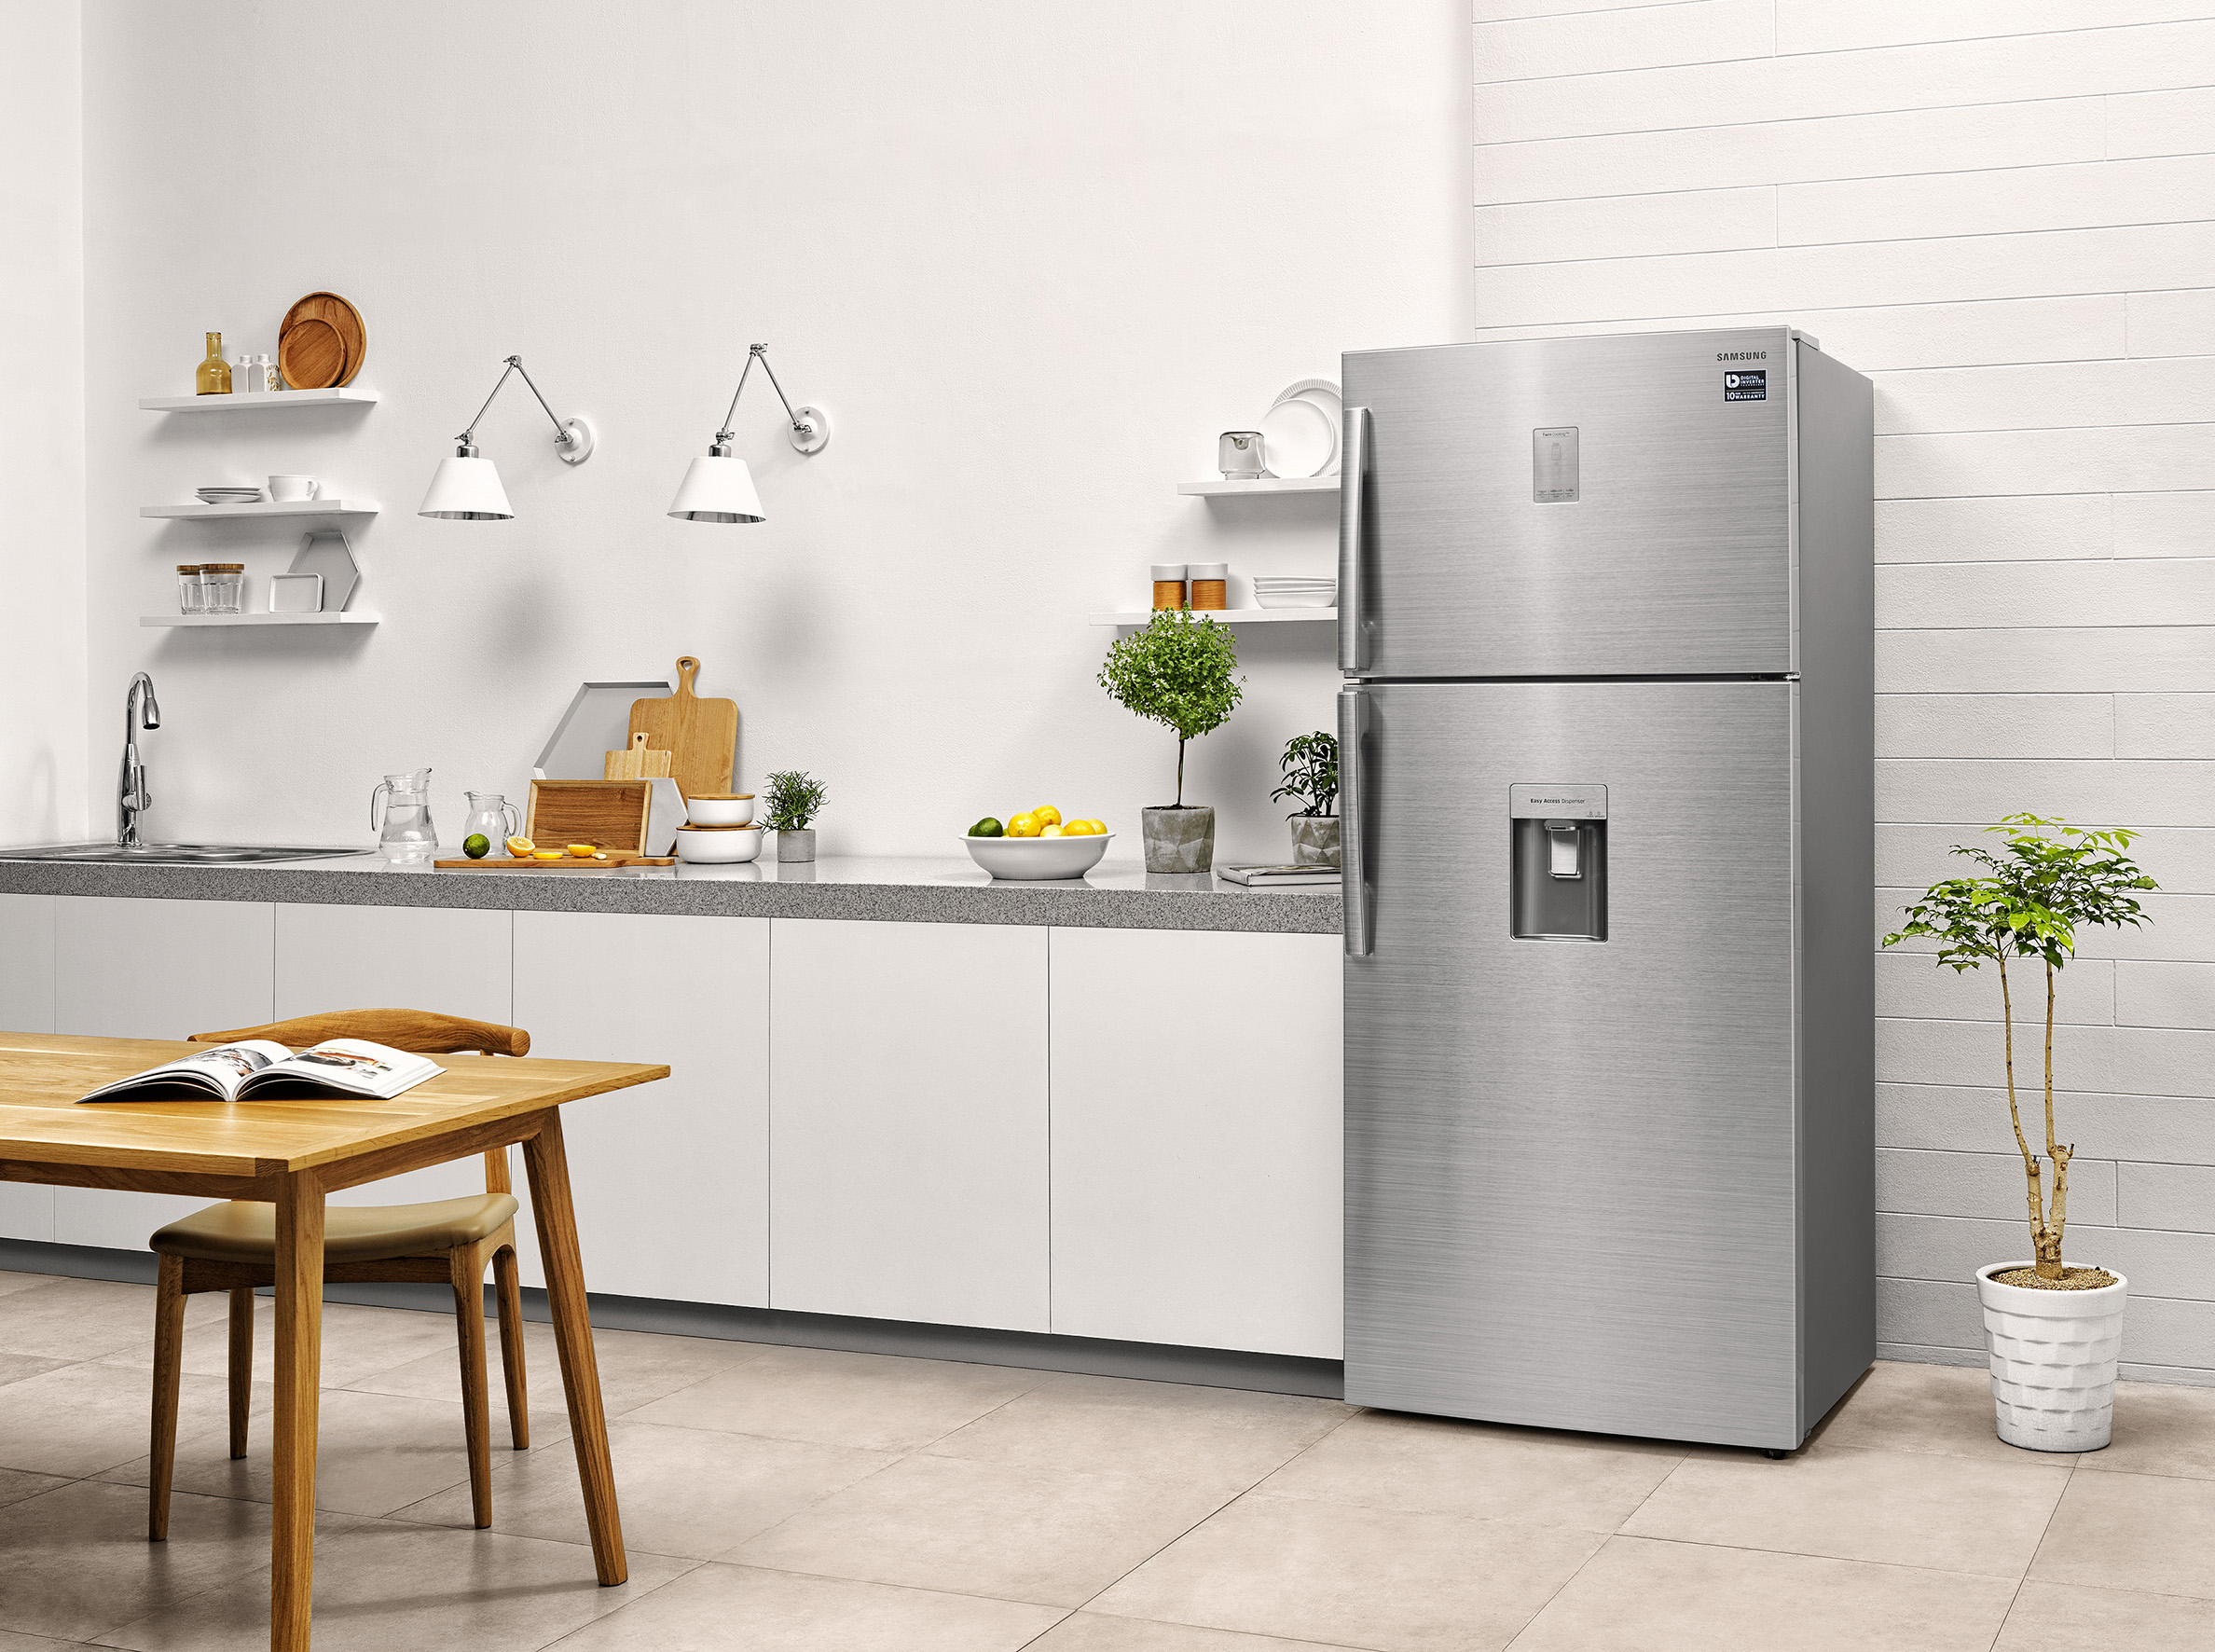 Узкие холодильники до 55 см. Узкий холодильник для маленькой кухни. Узкий холодильник с диспенсером. Мини холодильник в интерьере. Белый мини холодильник в интерьере.